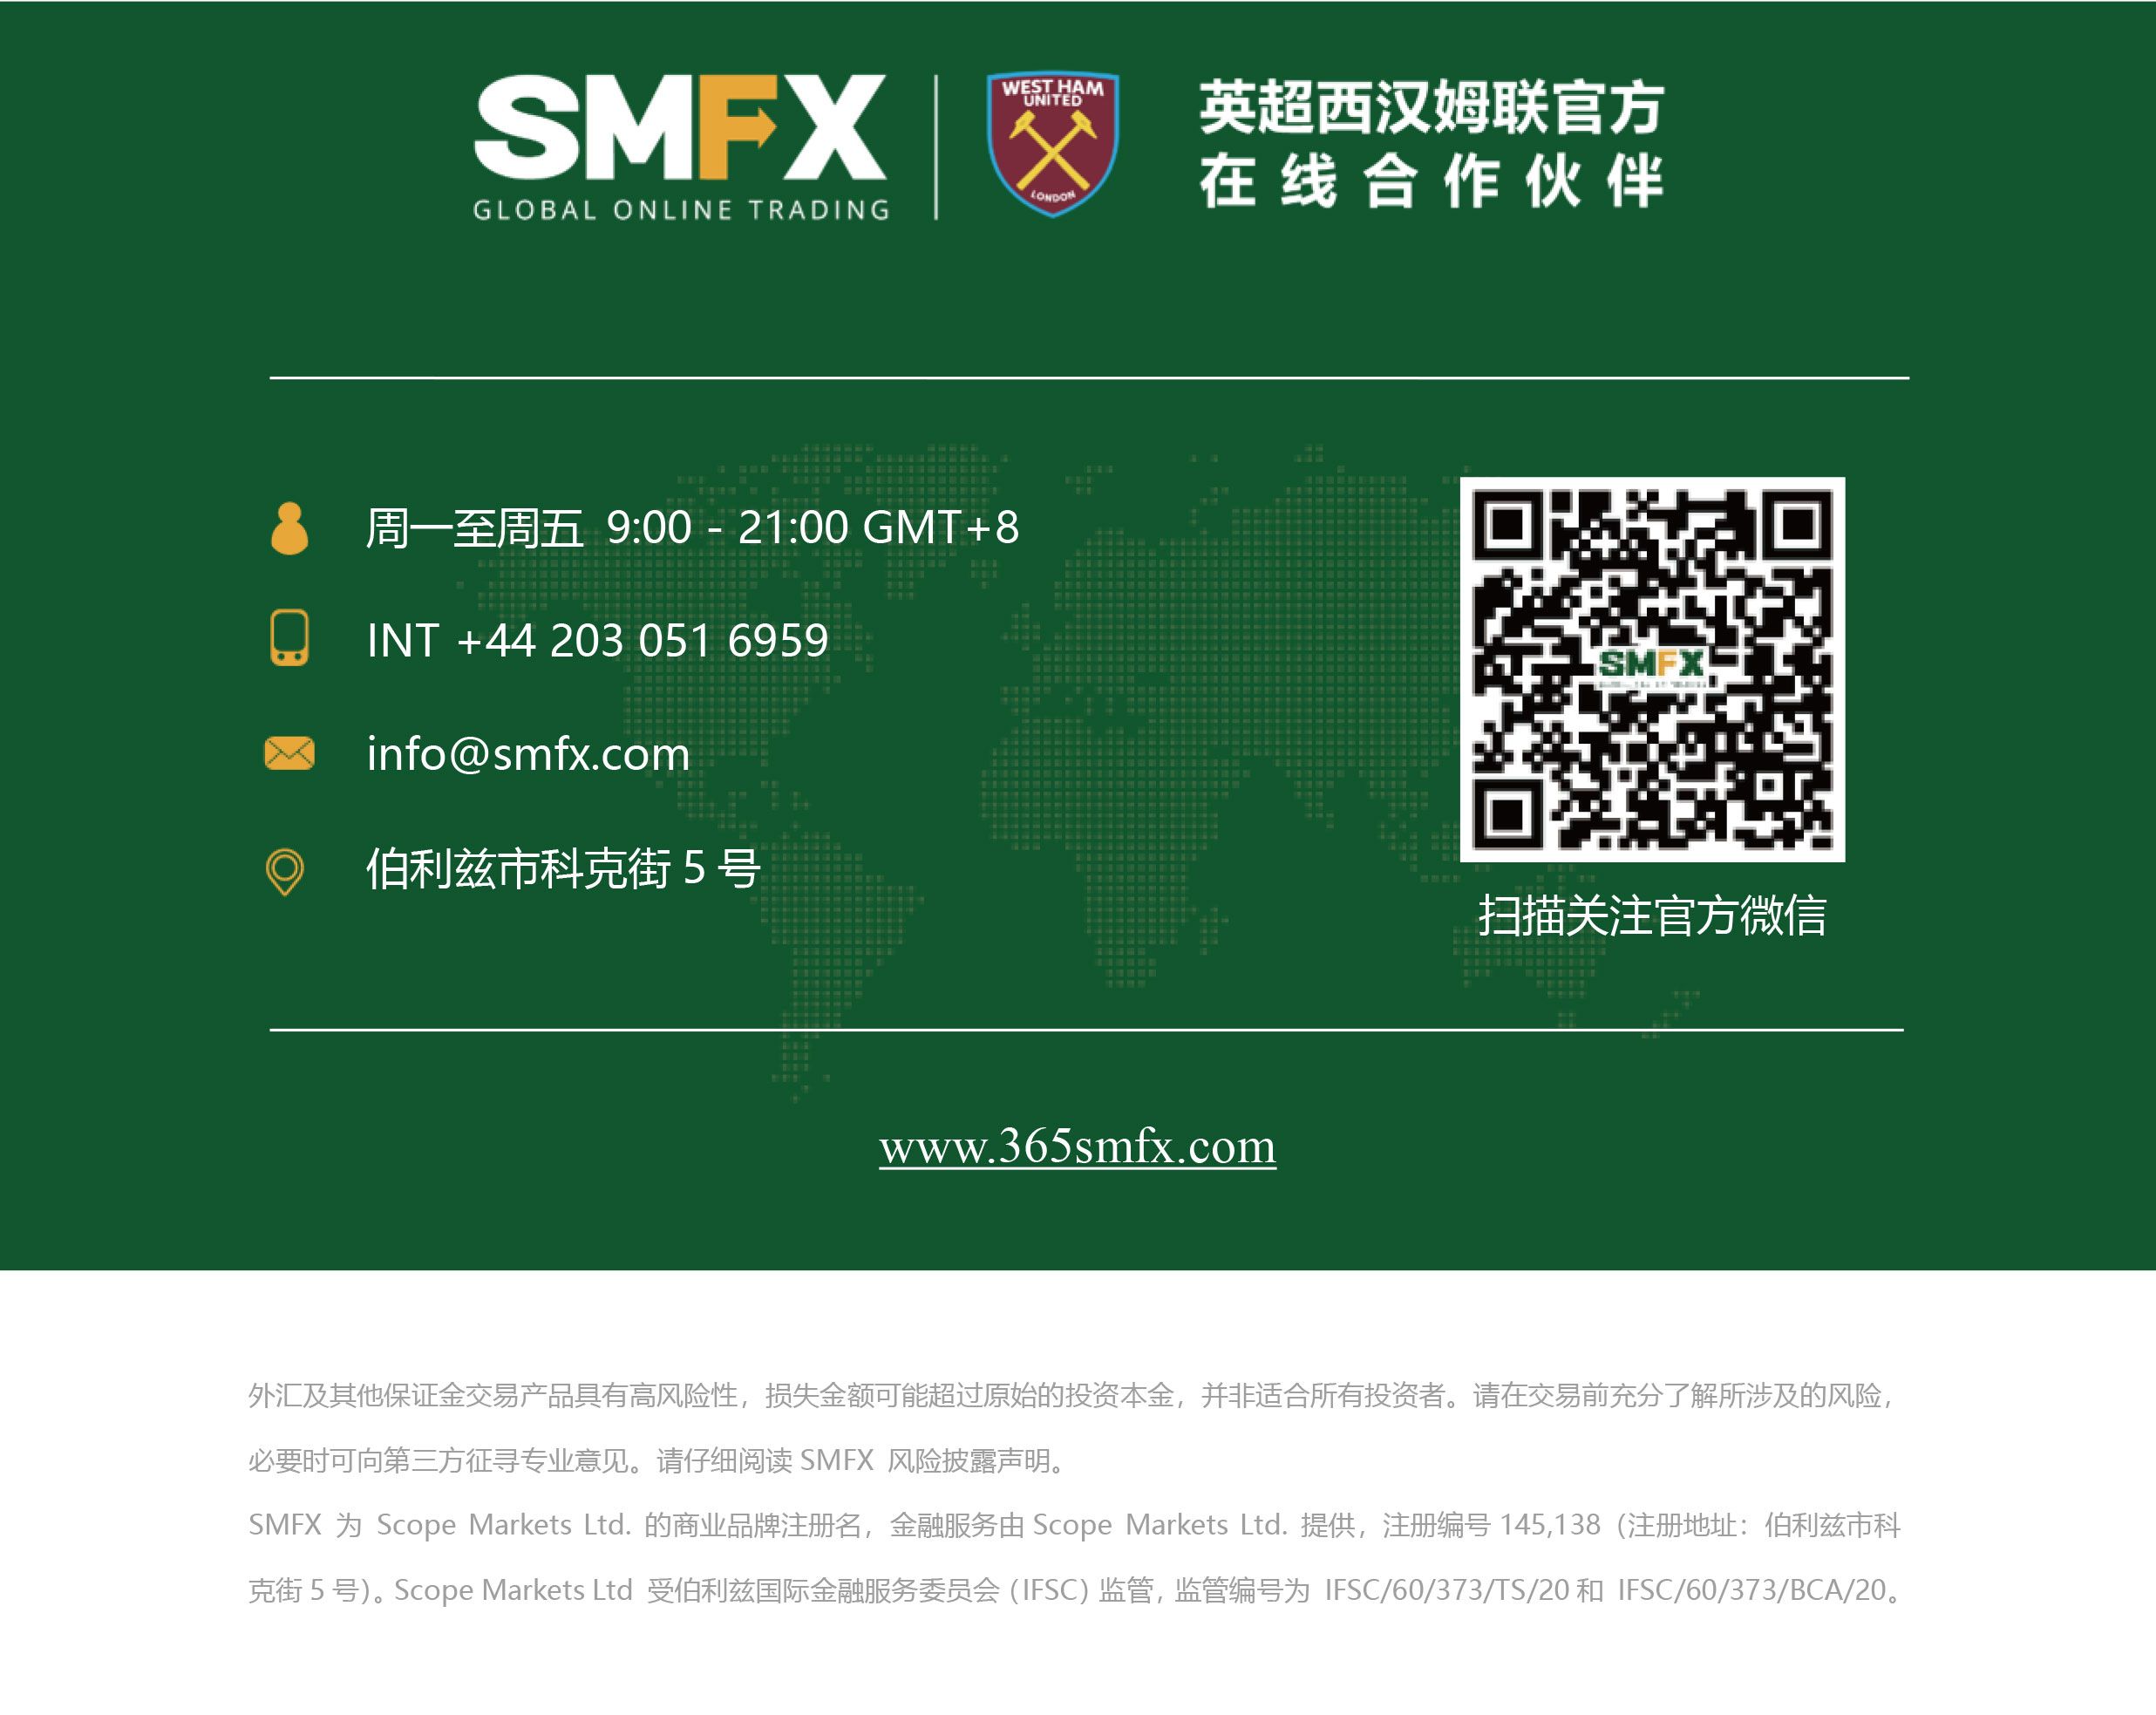 SMFX【市场晚评】2020.09.29丨黄金多头稳扎稳打 美股反弹面临强压